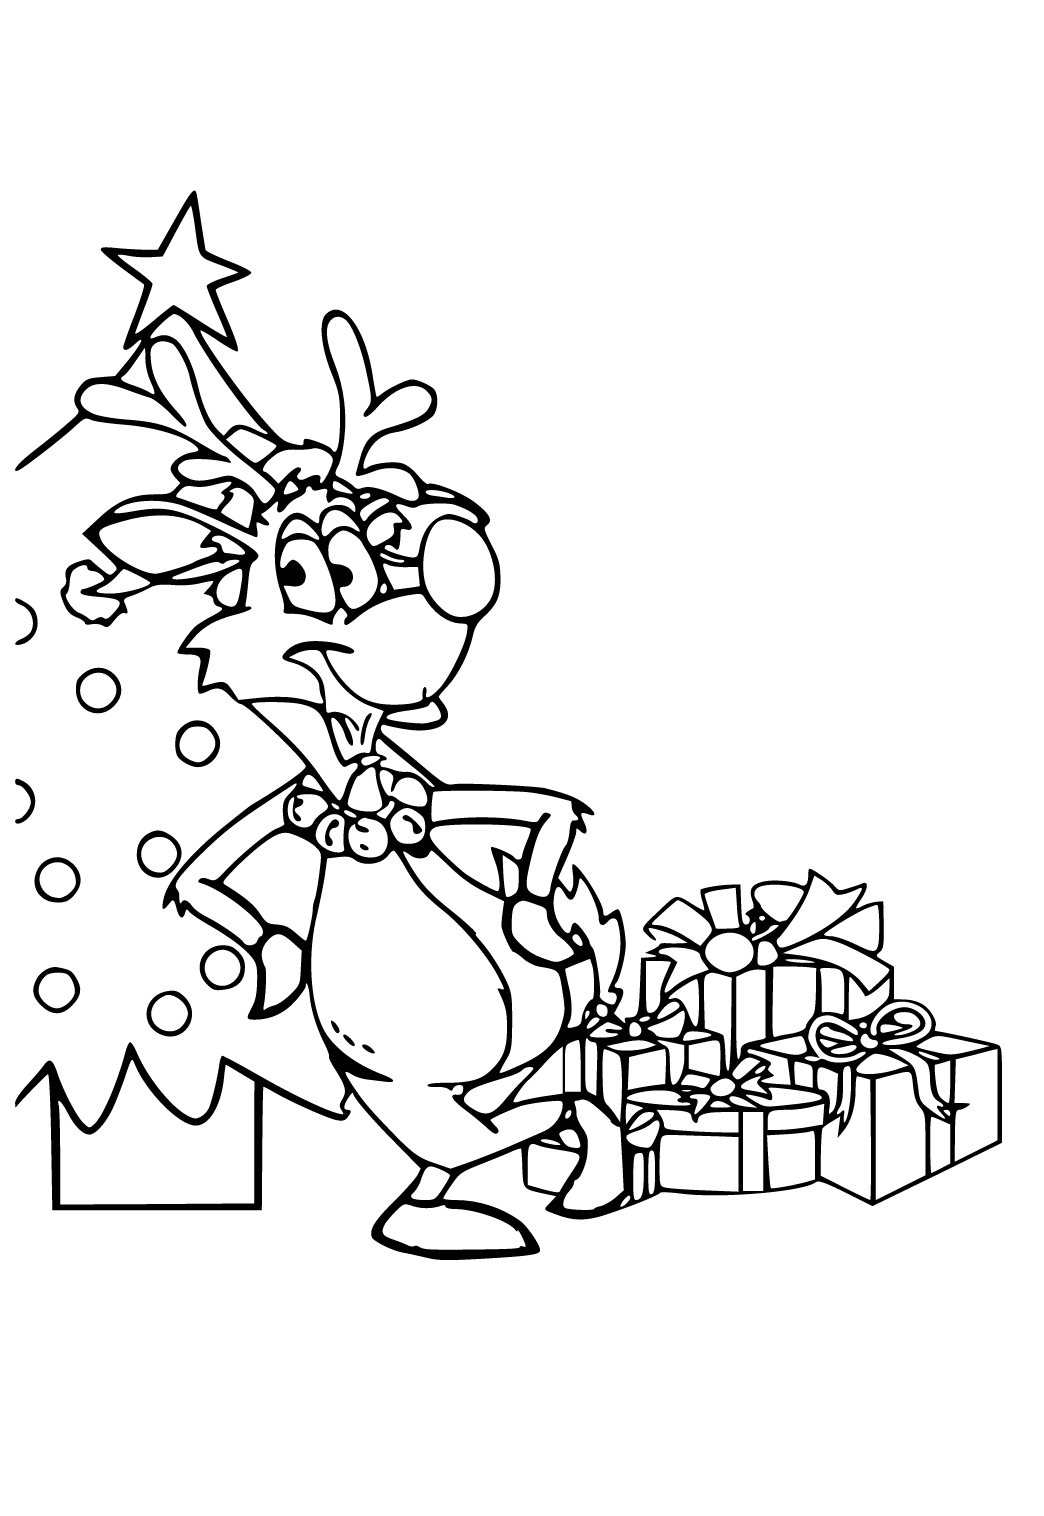 Dibujo e Imagen Navidad Reno para Colorear y Imprimir Gratis para Adultos,  Niñas y Niños 